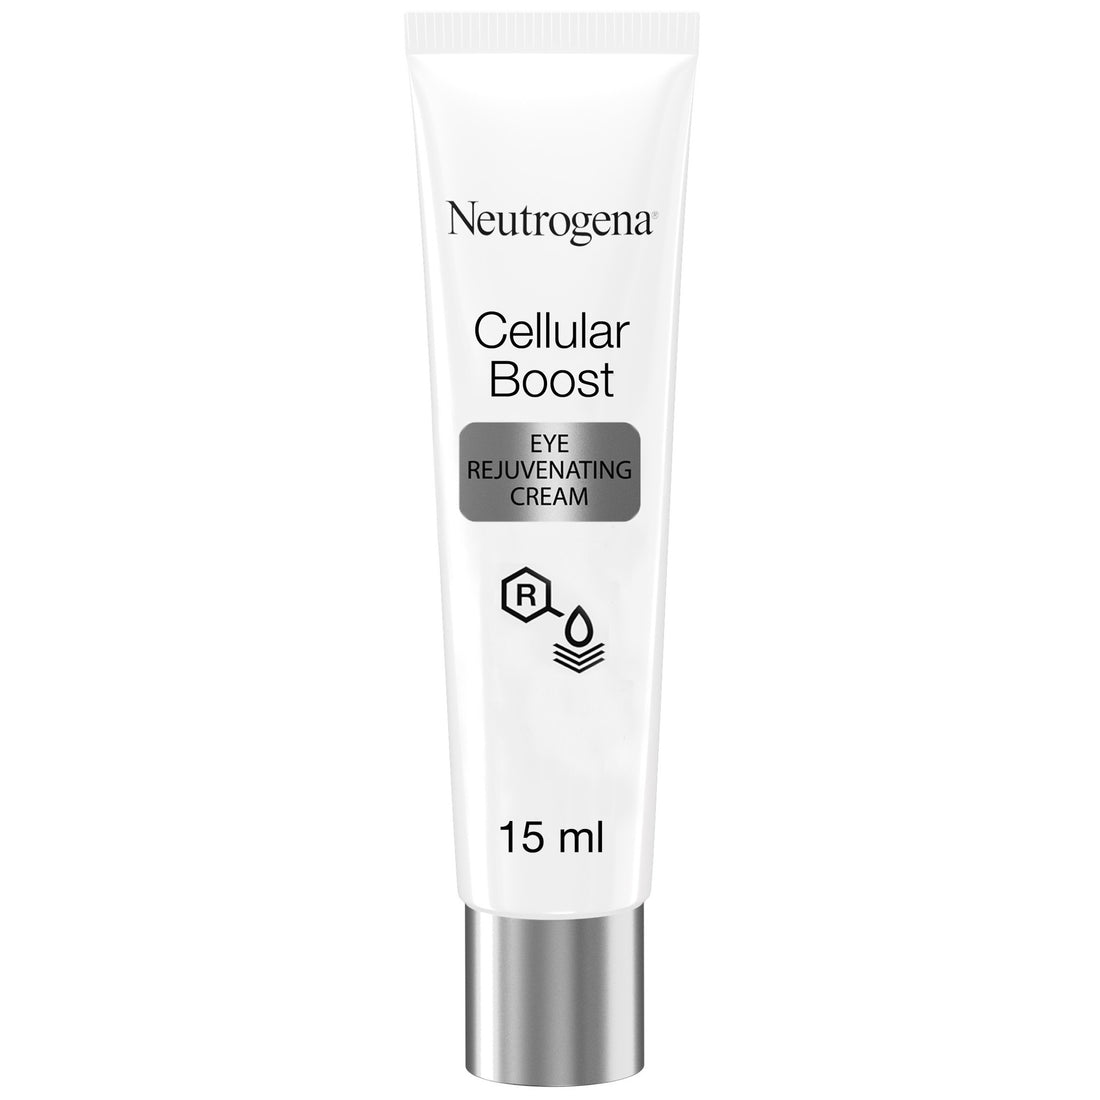 Neutrogena Eye Cream, Cellular Boost, Eye Rejuvenating Cream, 15ml